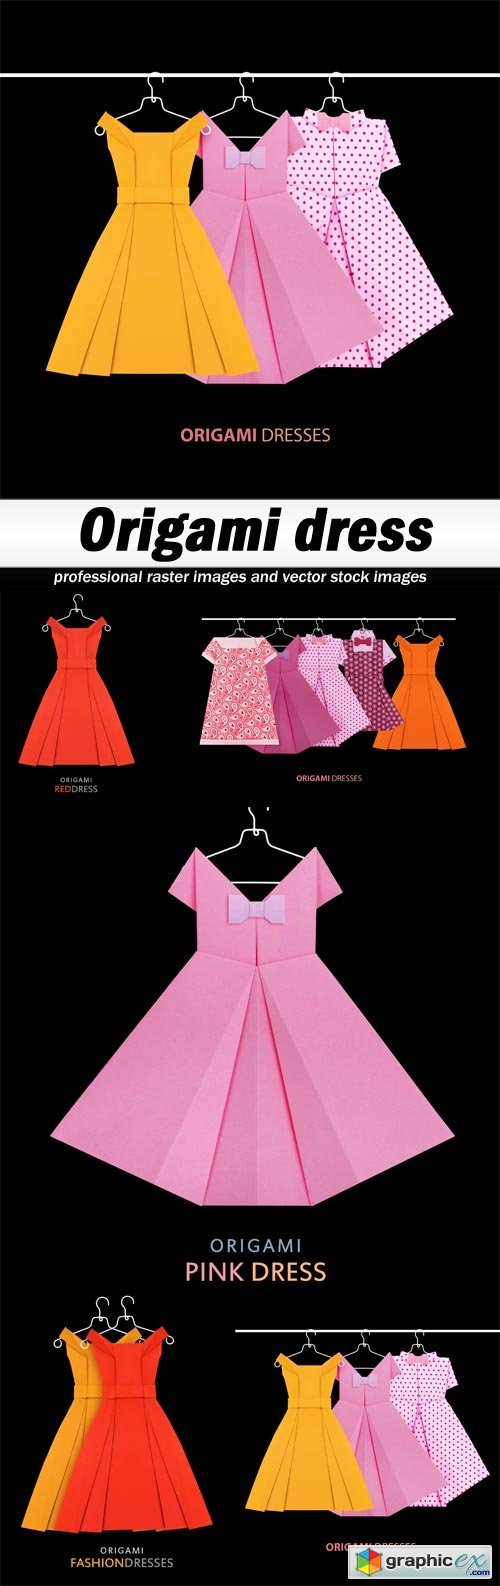 Origami dress - 5 UHQ JPEG